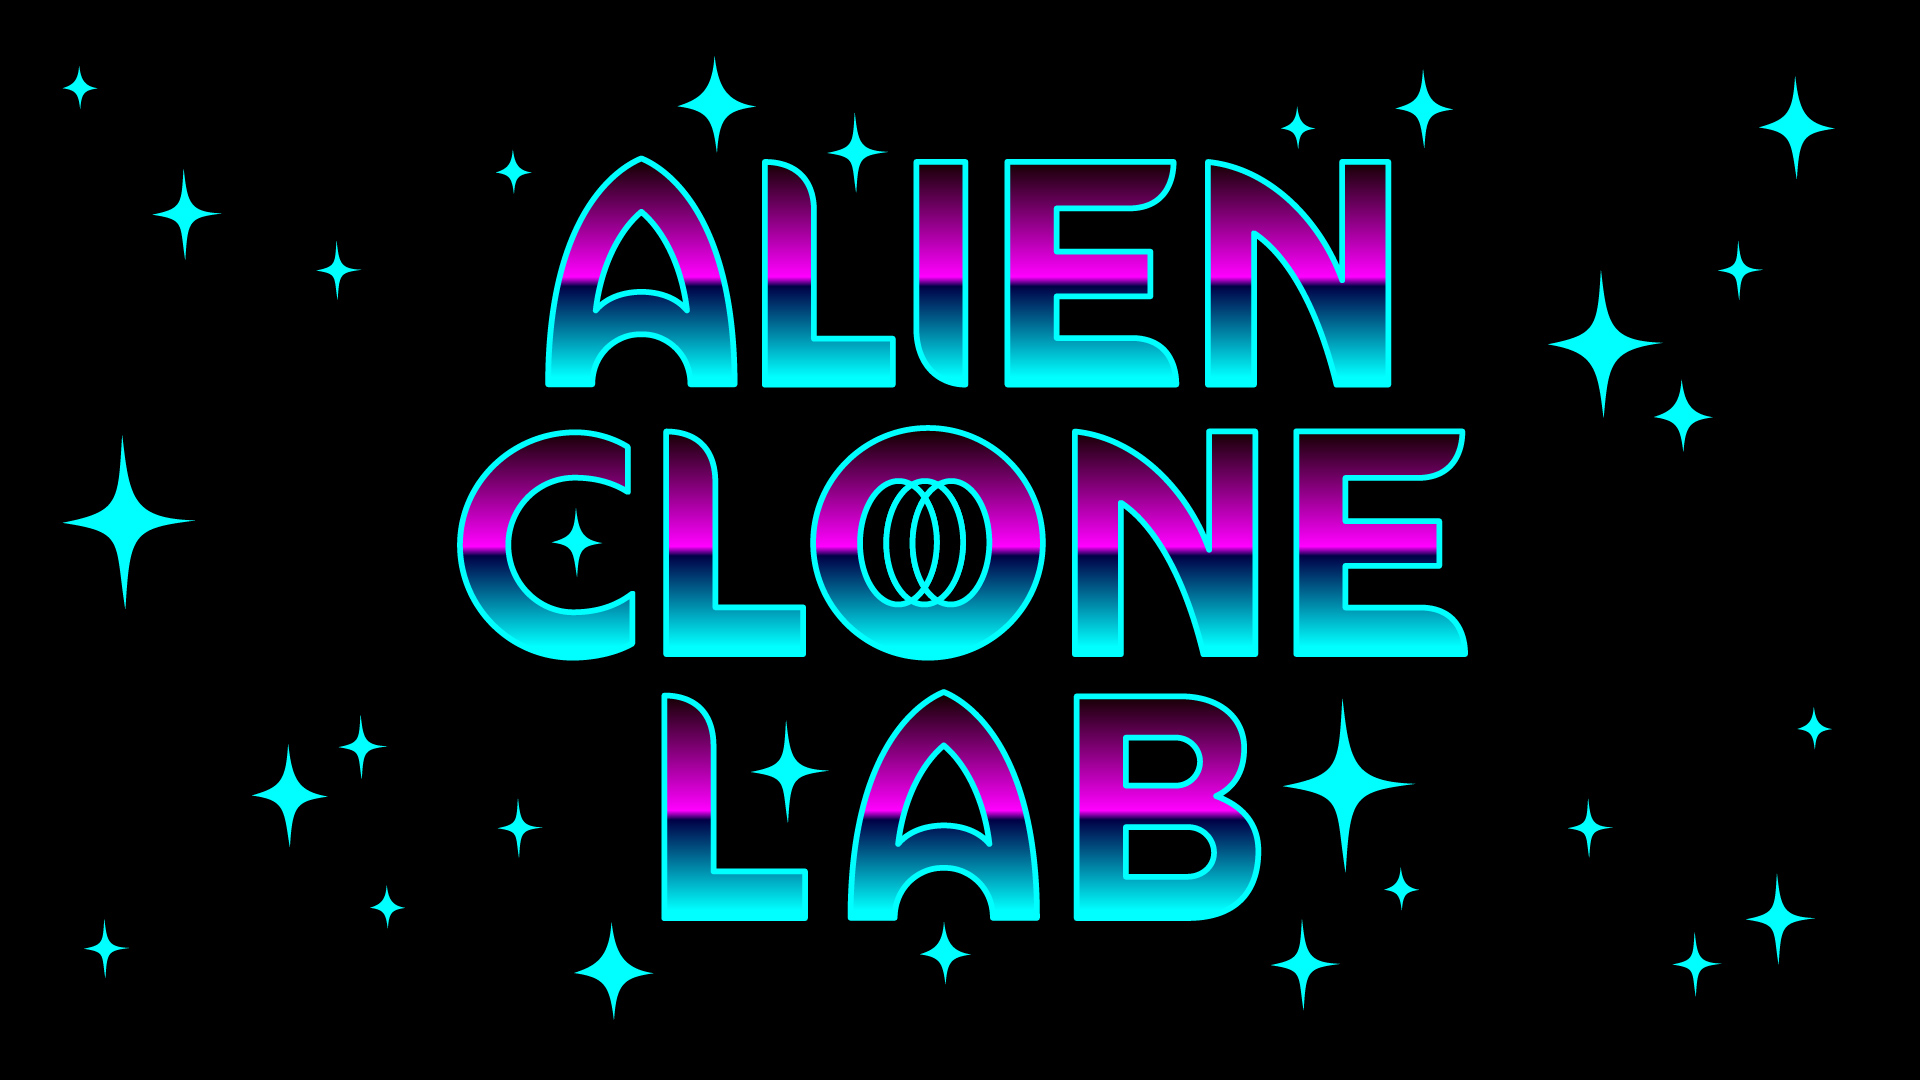 Alien_Clone_Lab_Cover 05